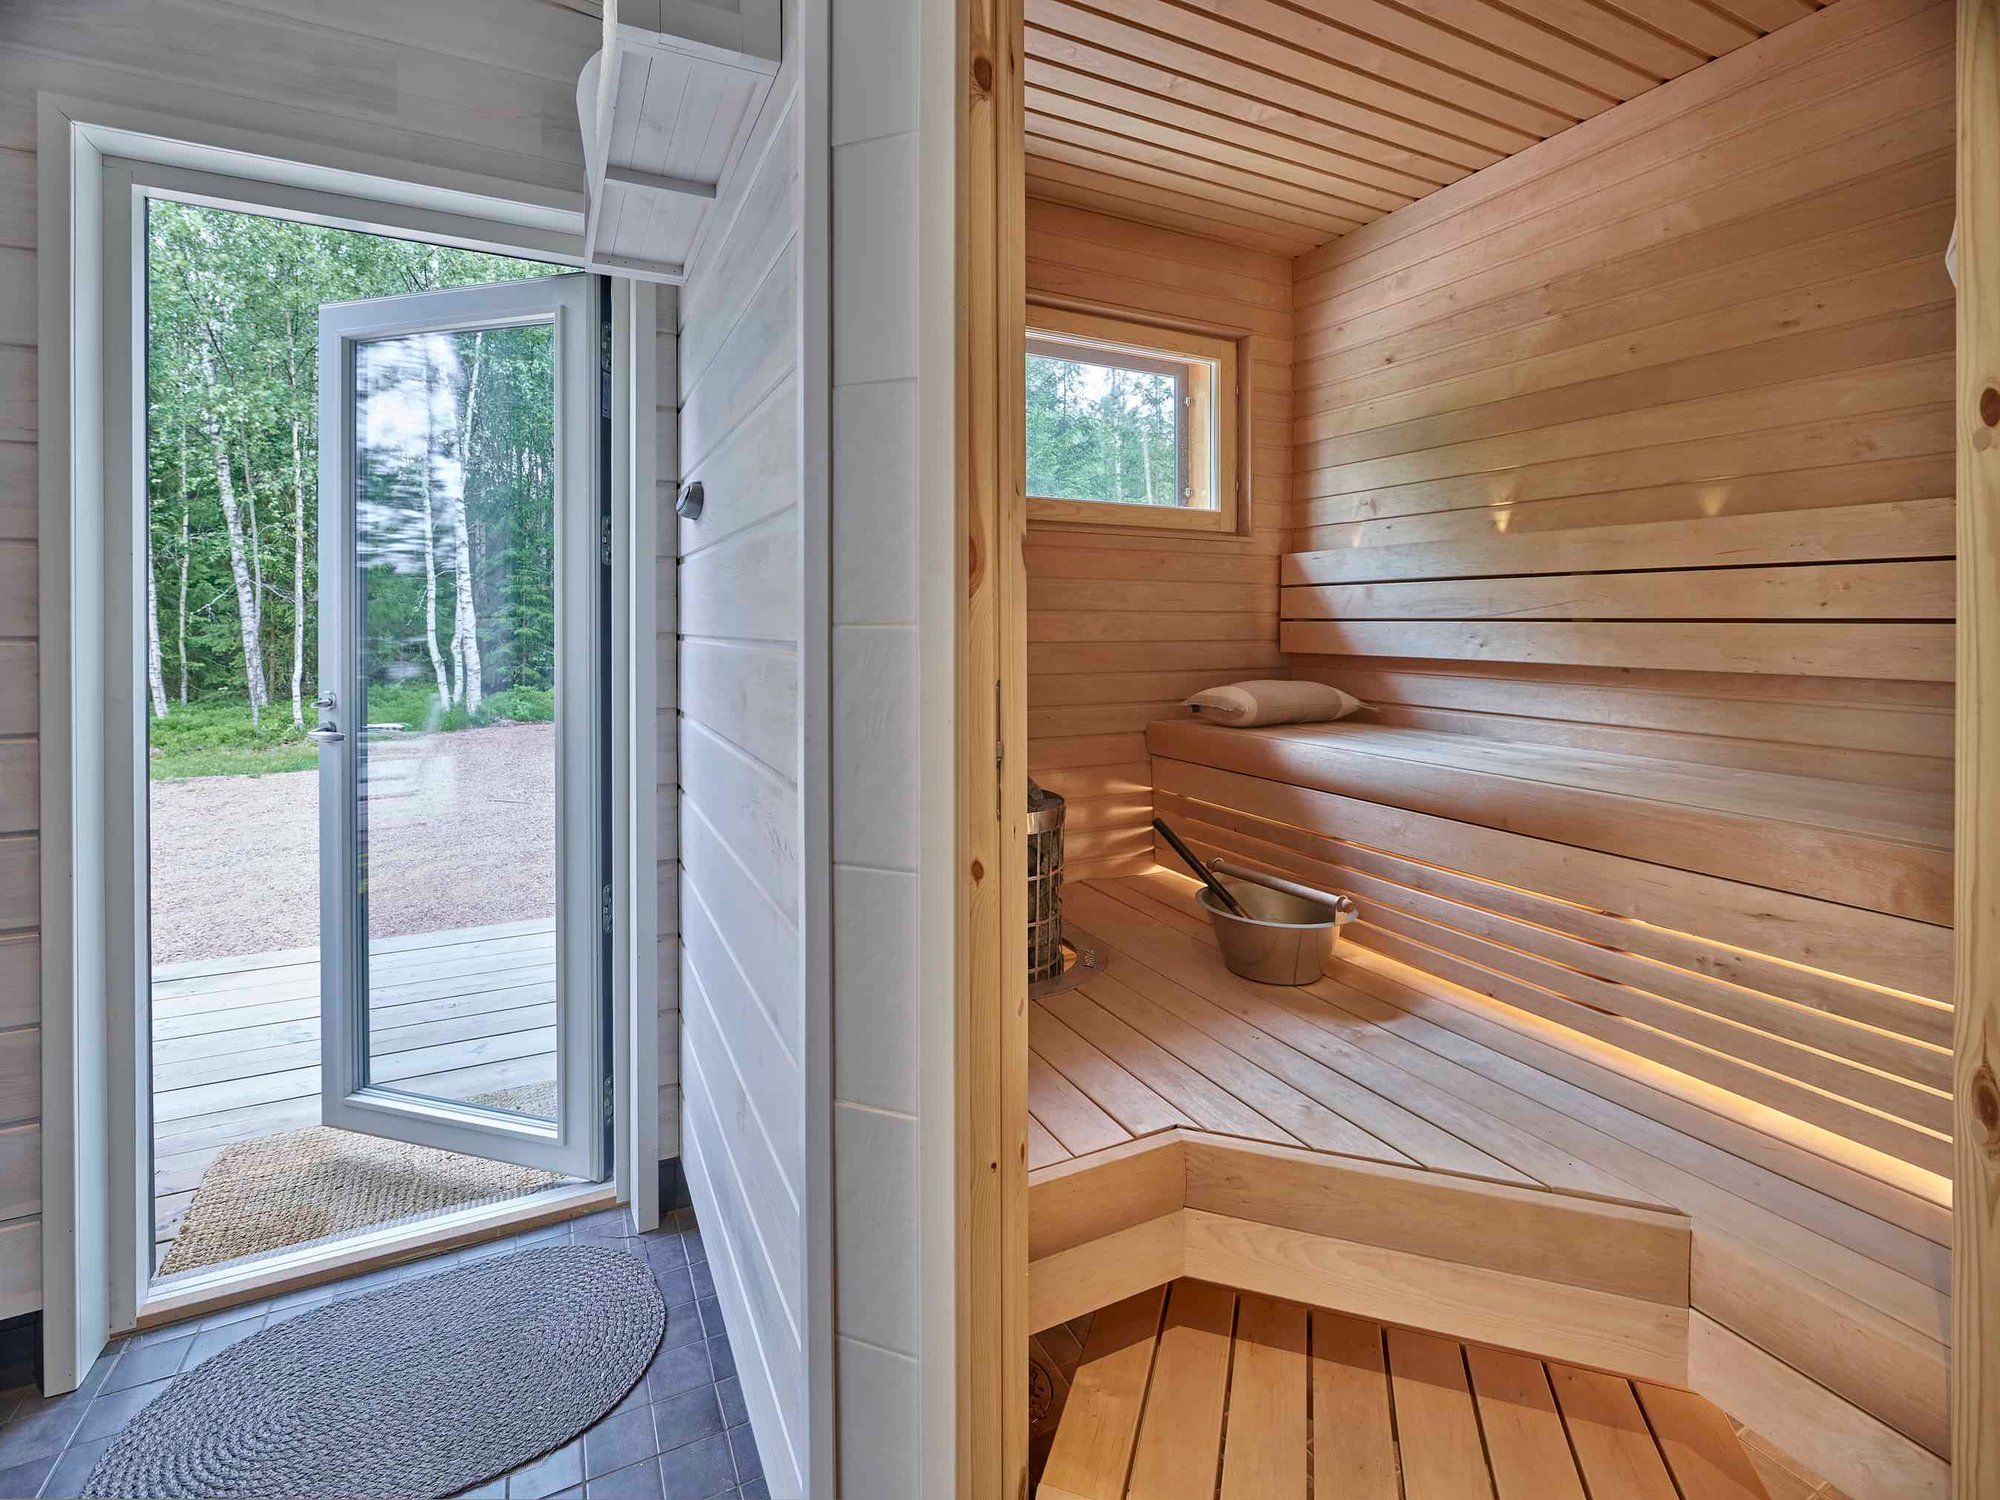 Loma-asunto Raaseporissa, sauna ja ulko-ovi